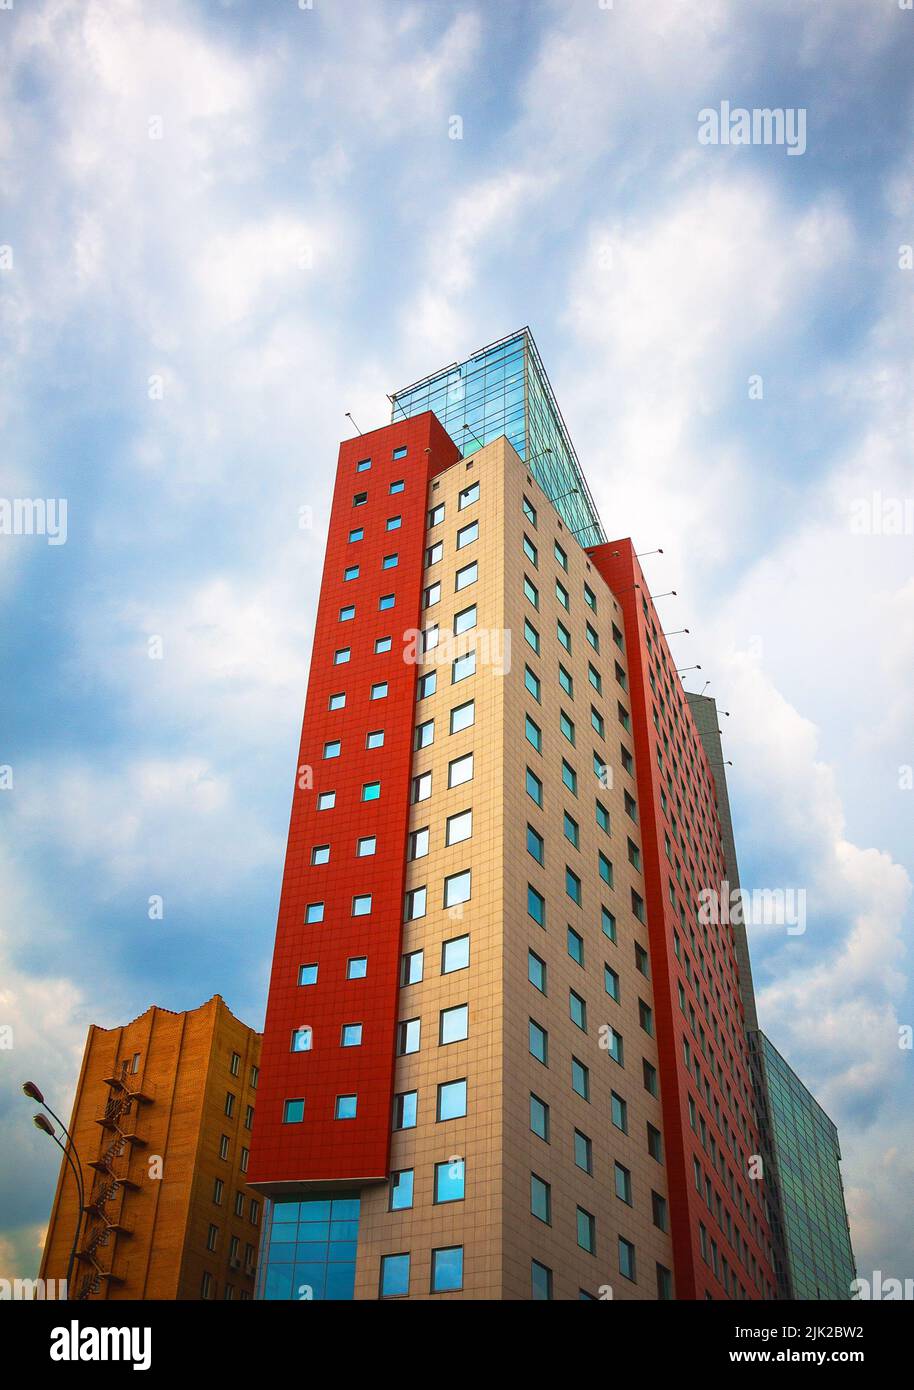 Eklektischer Dekonstruktivismus im Innenstadtgebäude (Formen und Farben stark verändert) Stockfoto